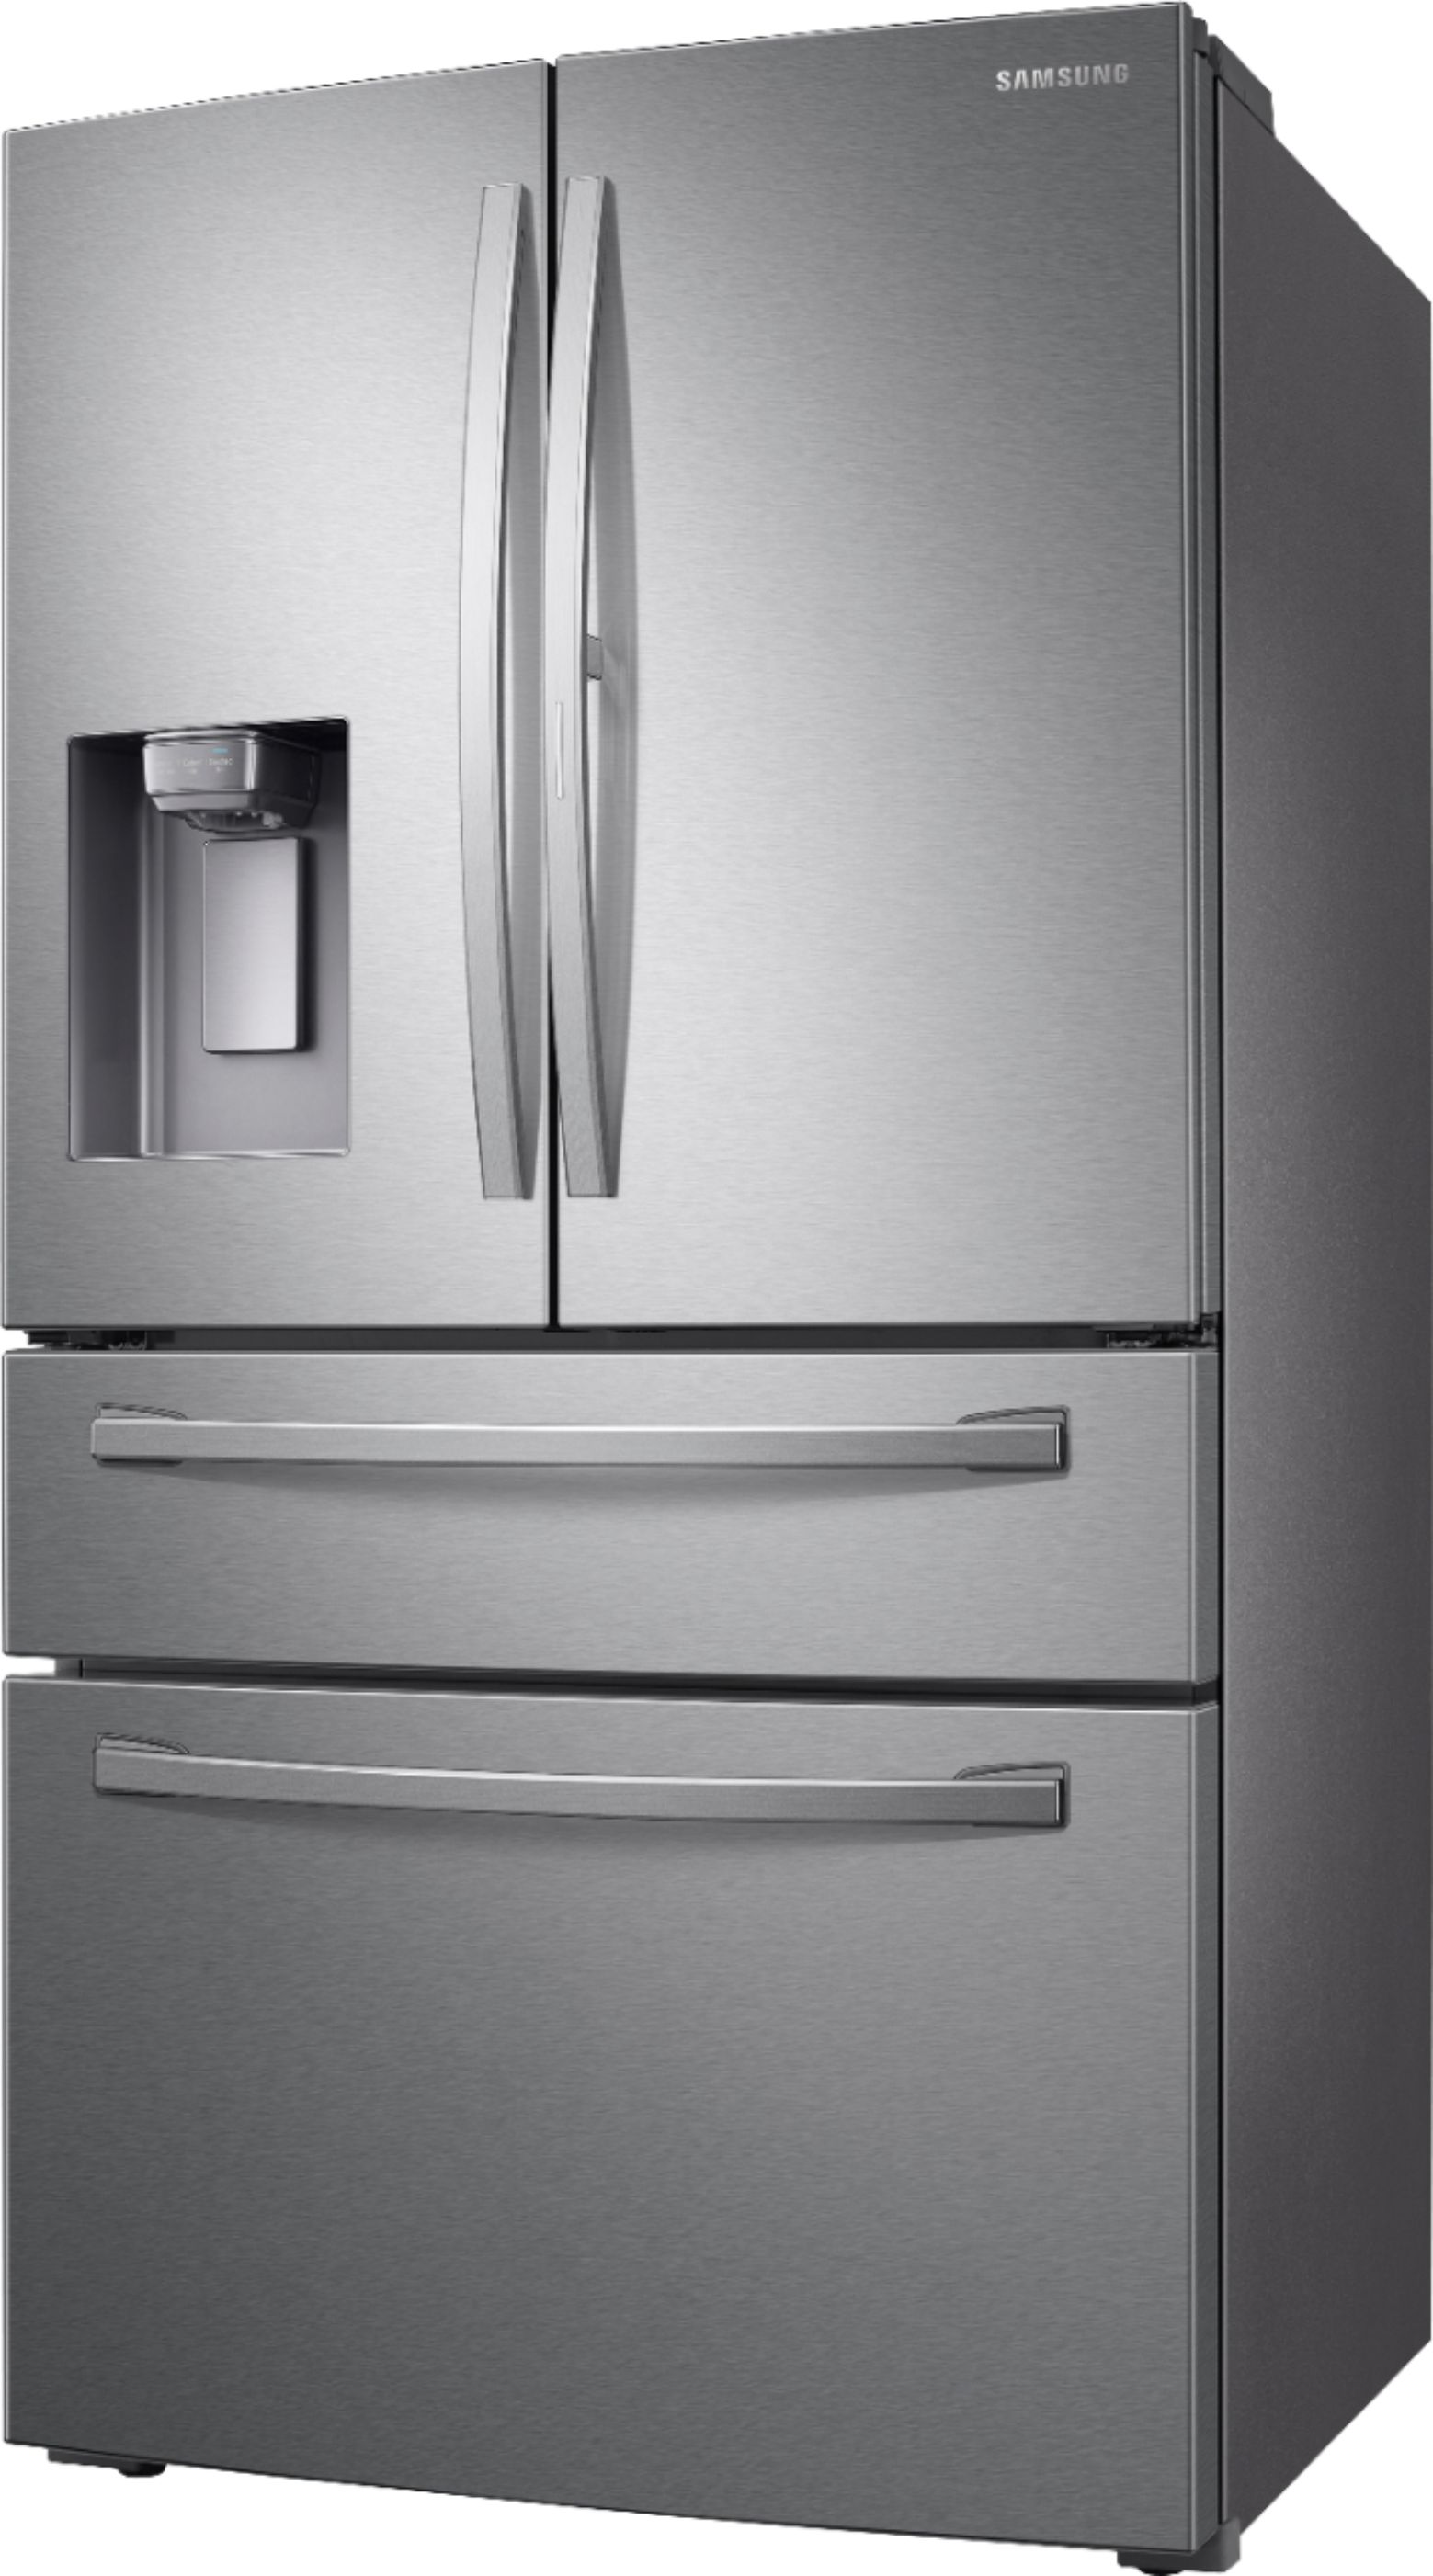 Samsung 22.6 cu. ft. 4-Door French Door Counter Depth Refrigerator with Best Buy Samsung Stainless Steel Refrigerator